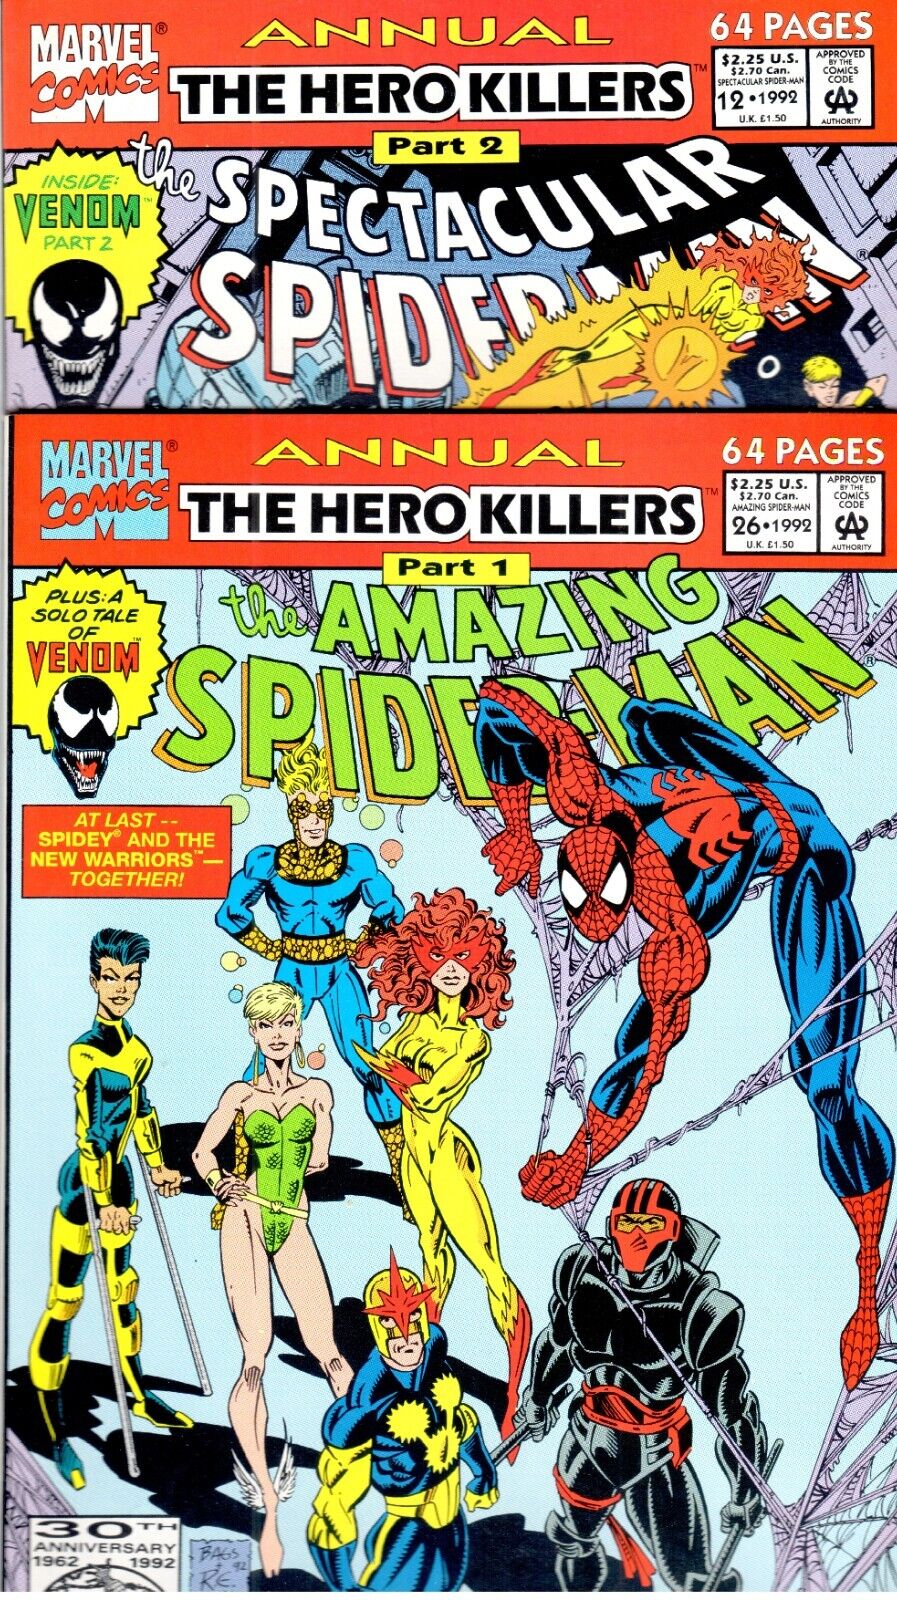 SPIDER-MAN HERO KILLERS ANNUALS: AMAZING 26  SPECTACULAR 22  VENOM  VF/NM (9.0)